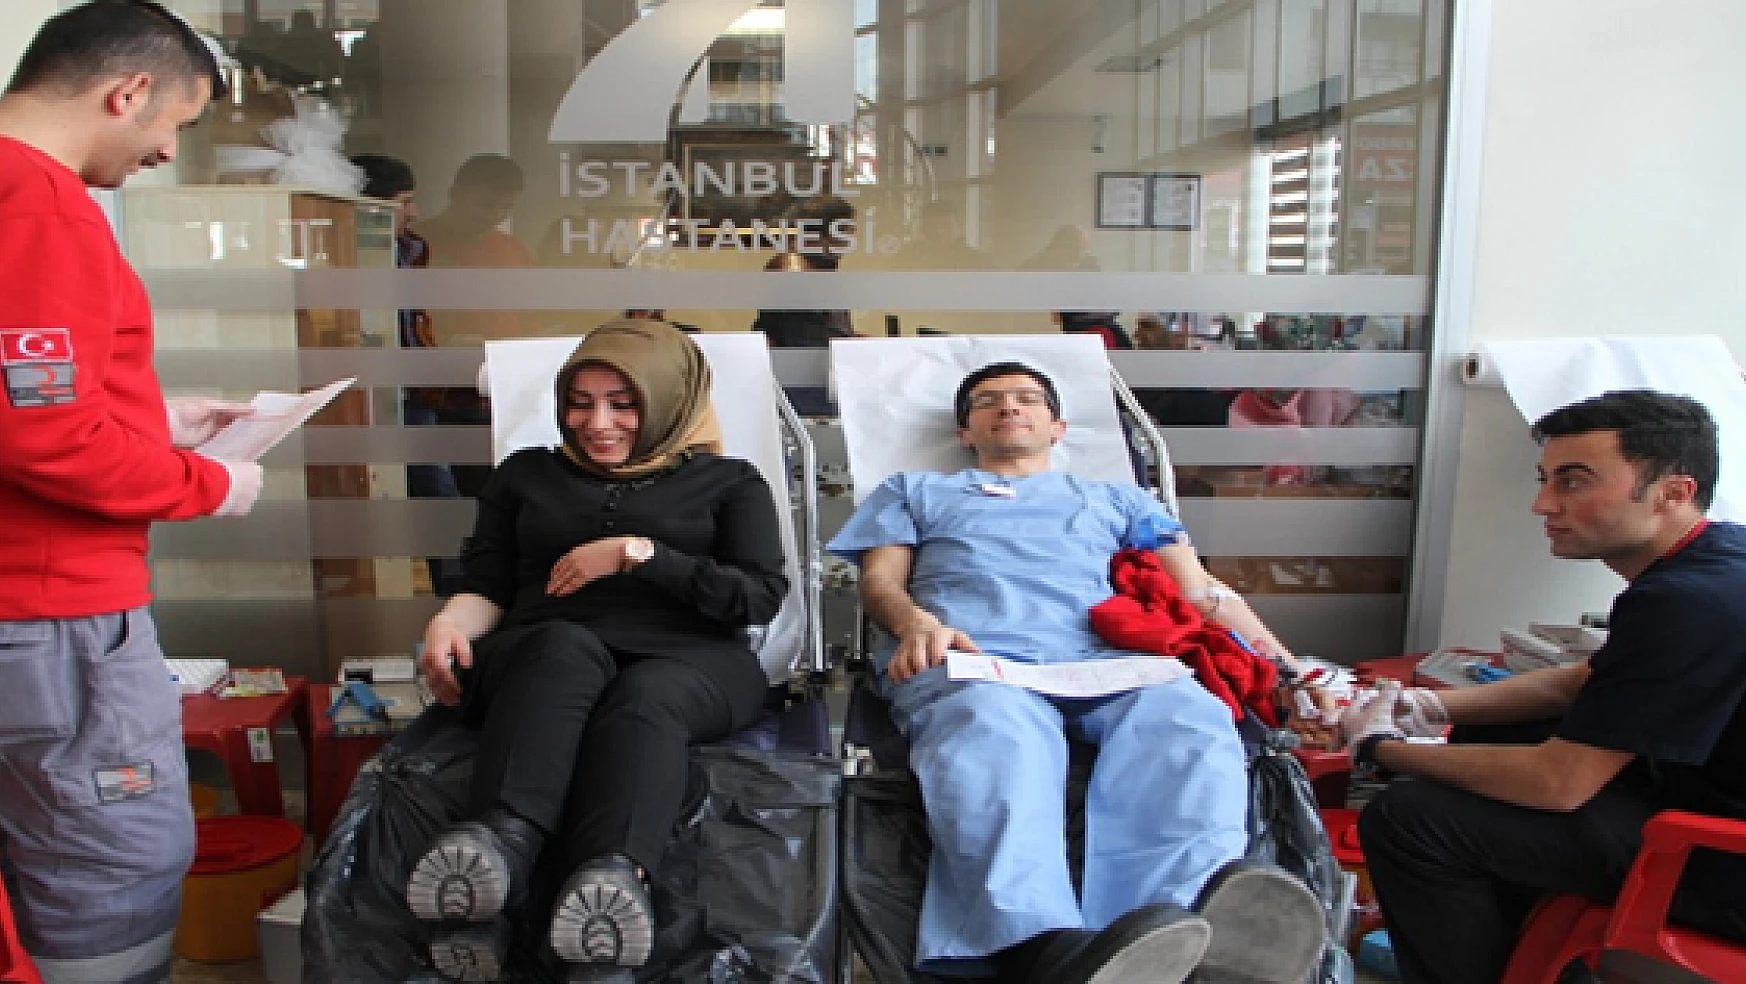 İstanbul Hastanesinden Kan Bağışı